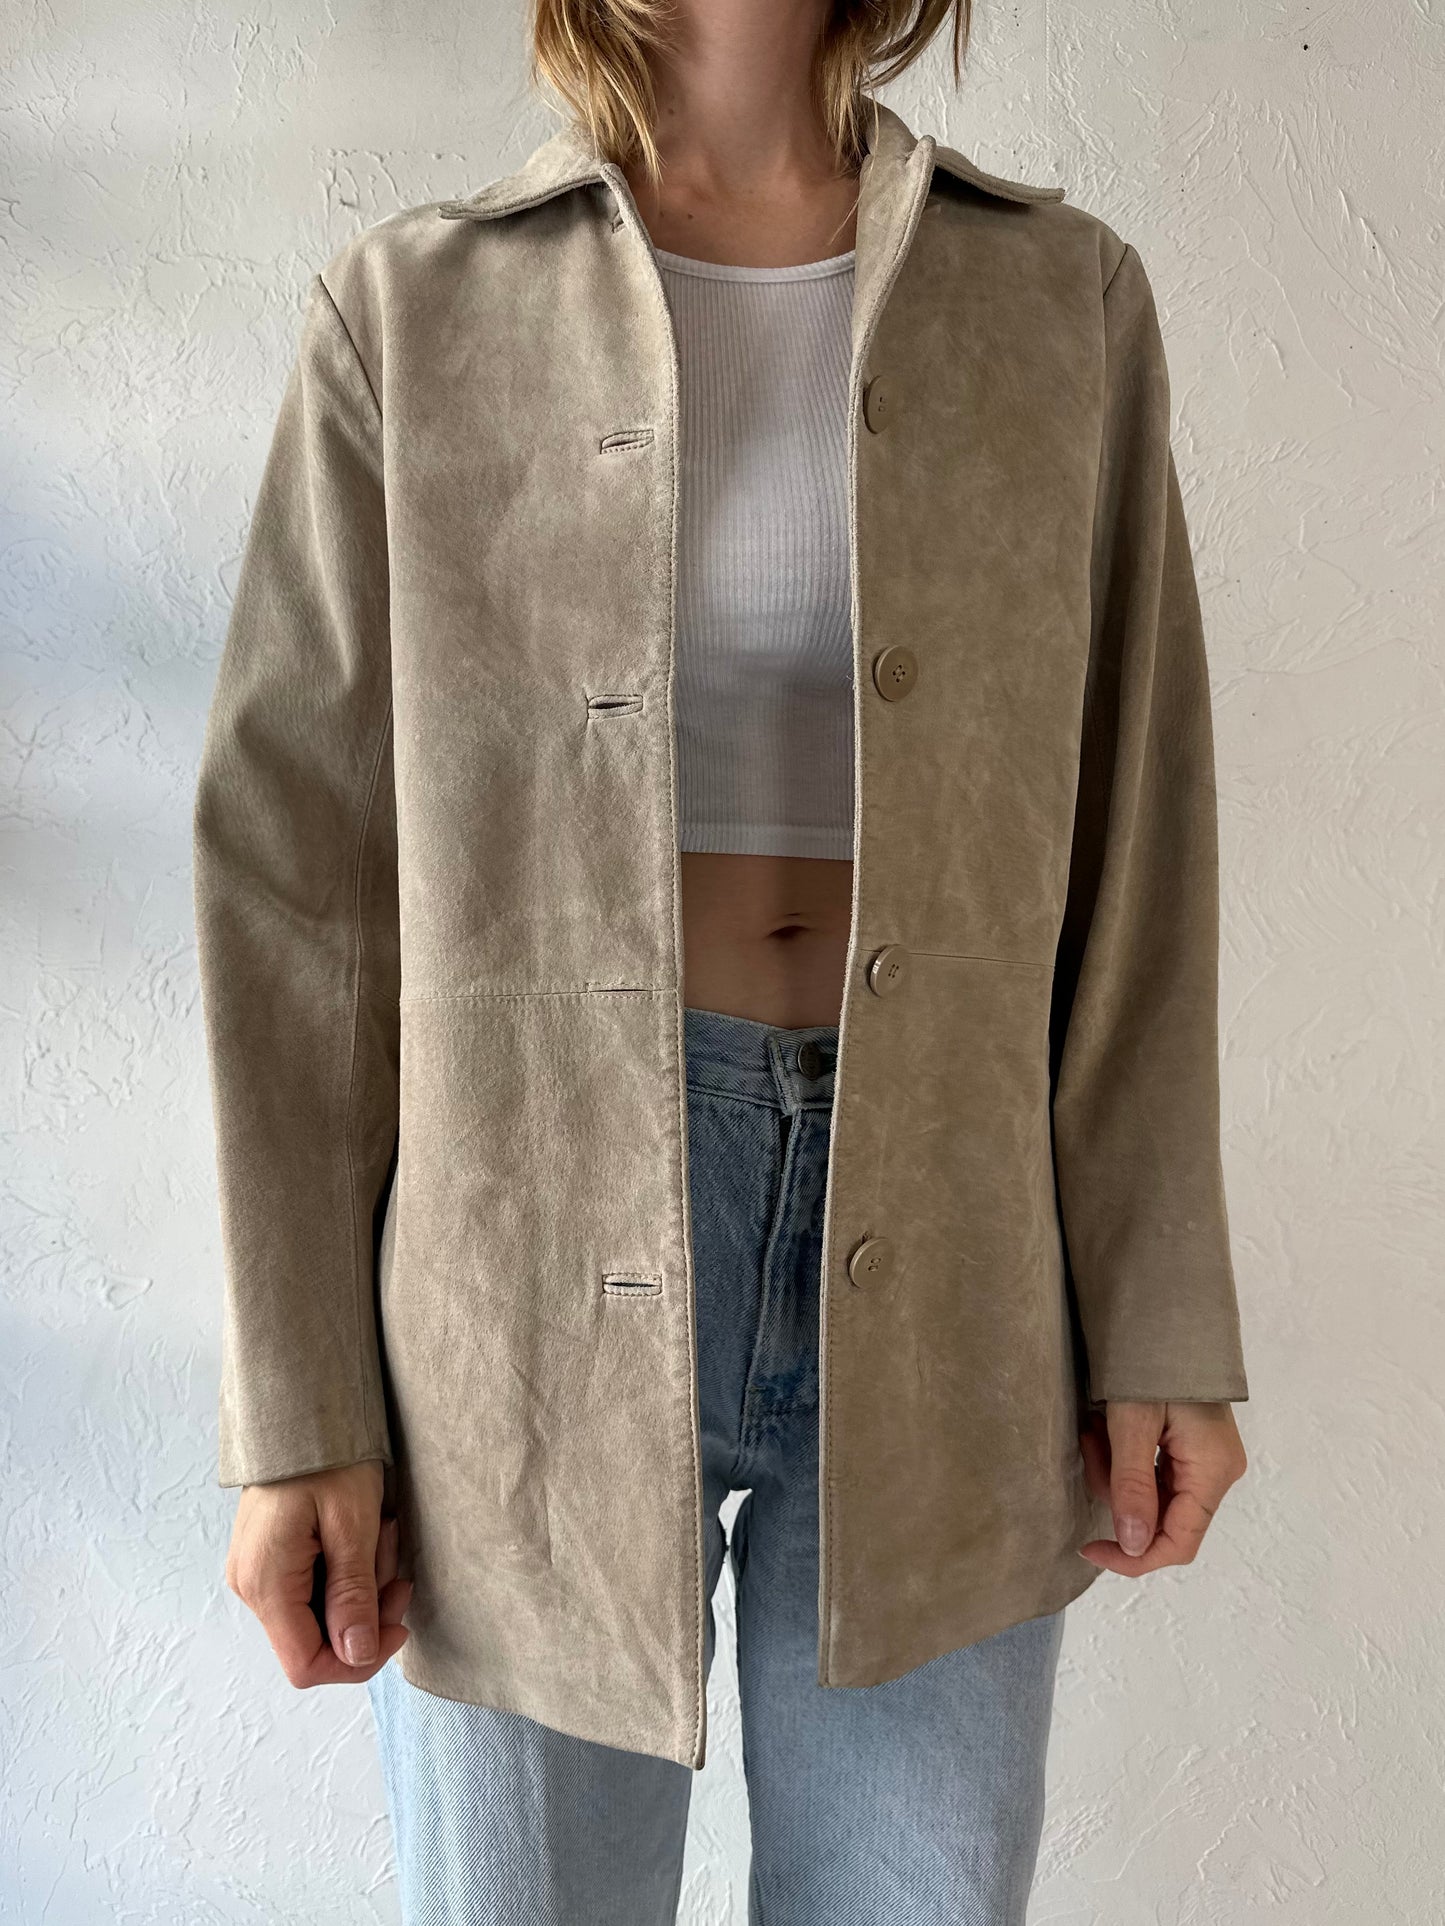 Y2k 'Bernardo' Tan Suede Leather Jacket / Small